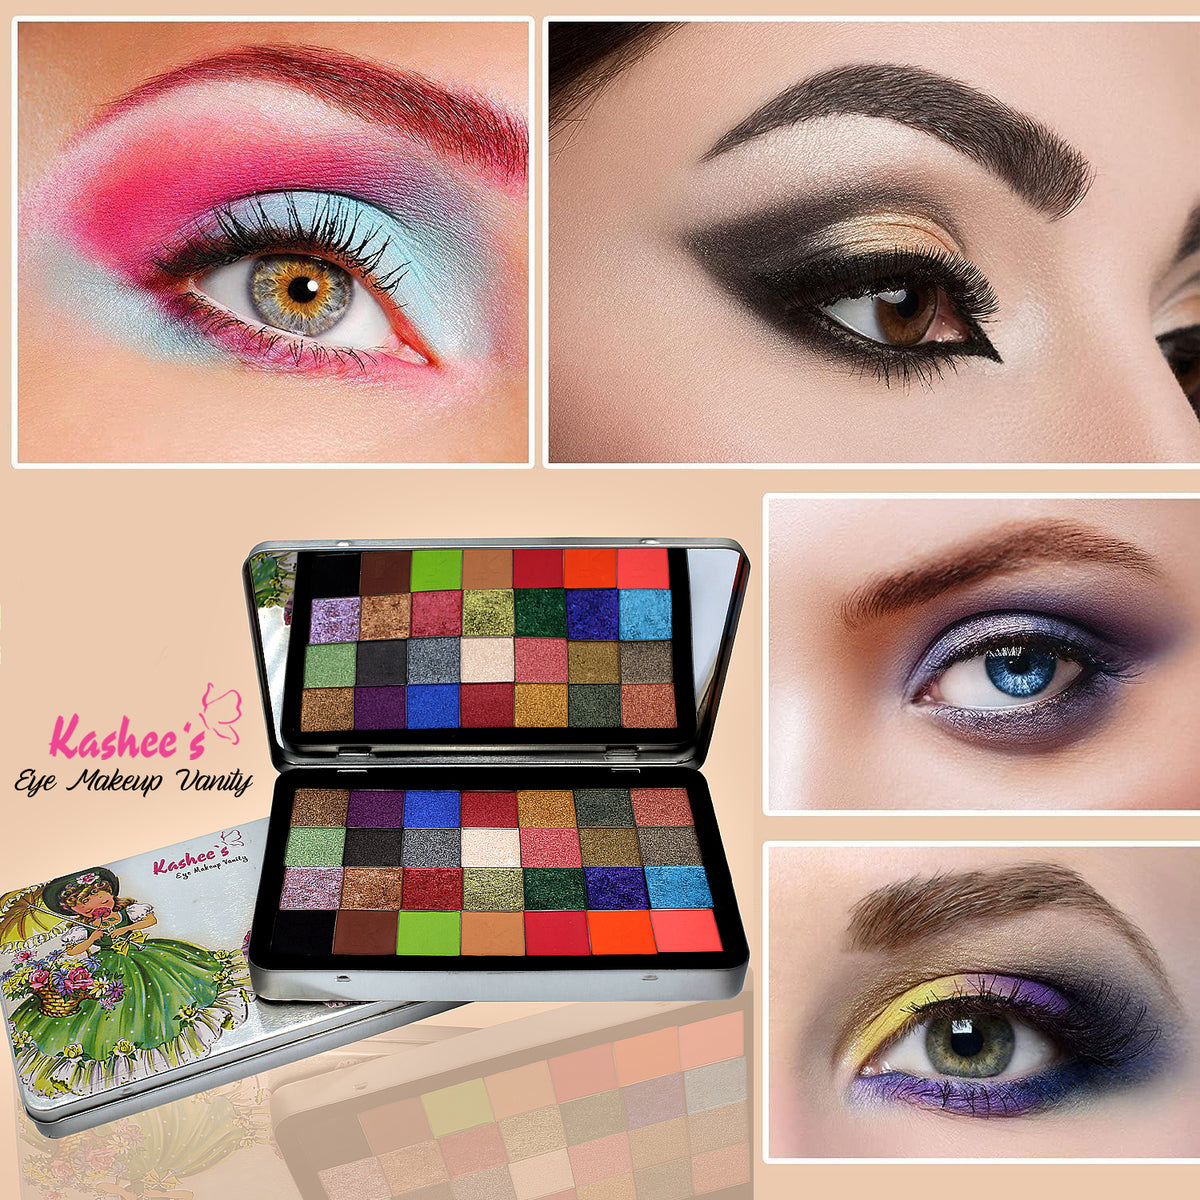 Kashee’s Eye Makeup Vanity